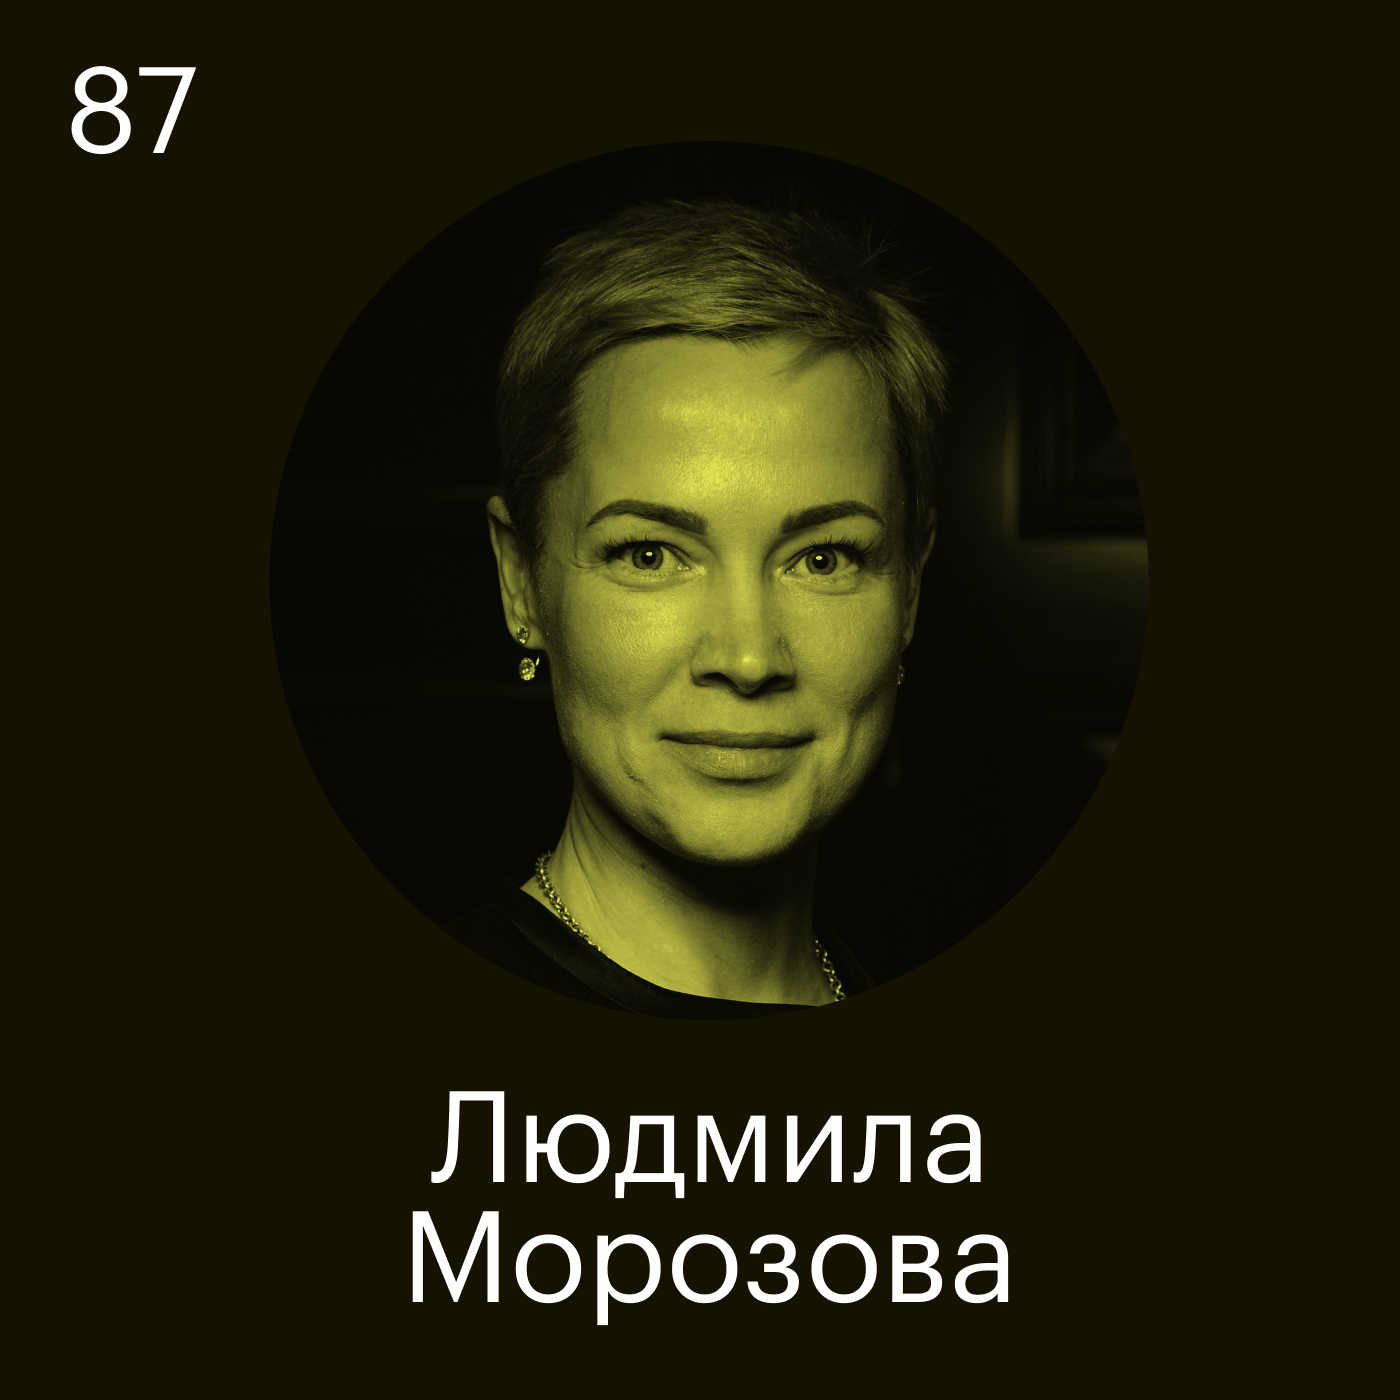 Людмила Морозова, TSQ Consulting: Ценность — это то, от чего вы не готовы отказаться даже под страхом смерти